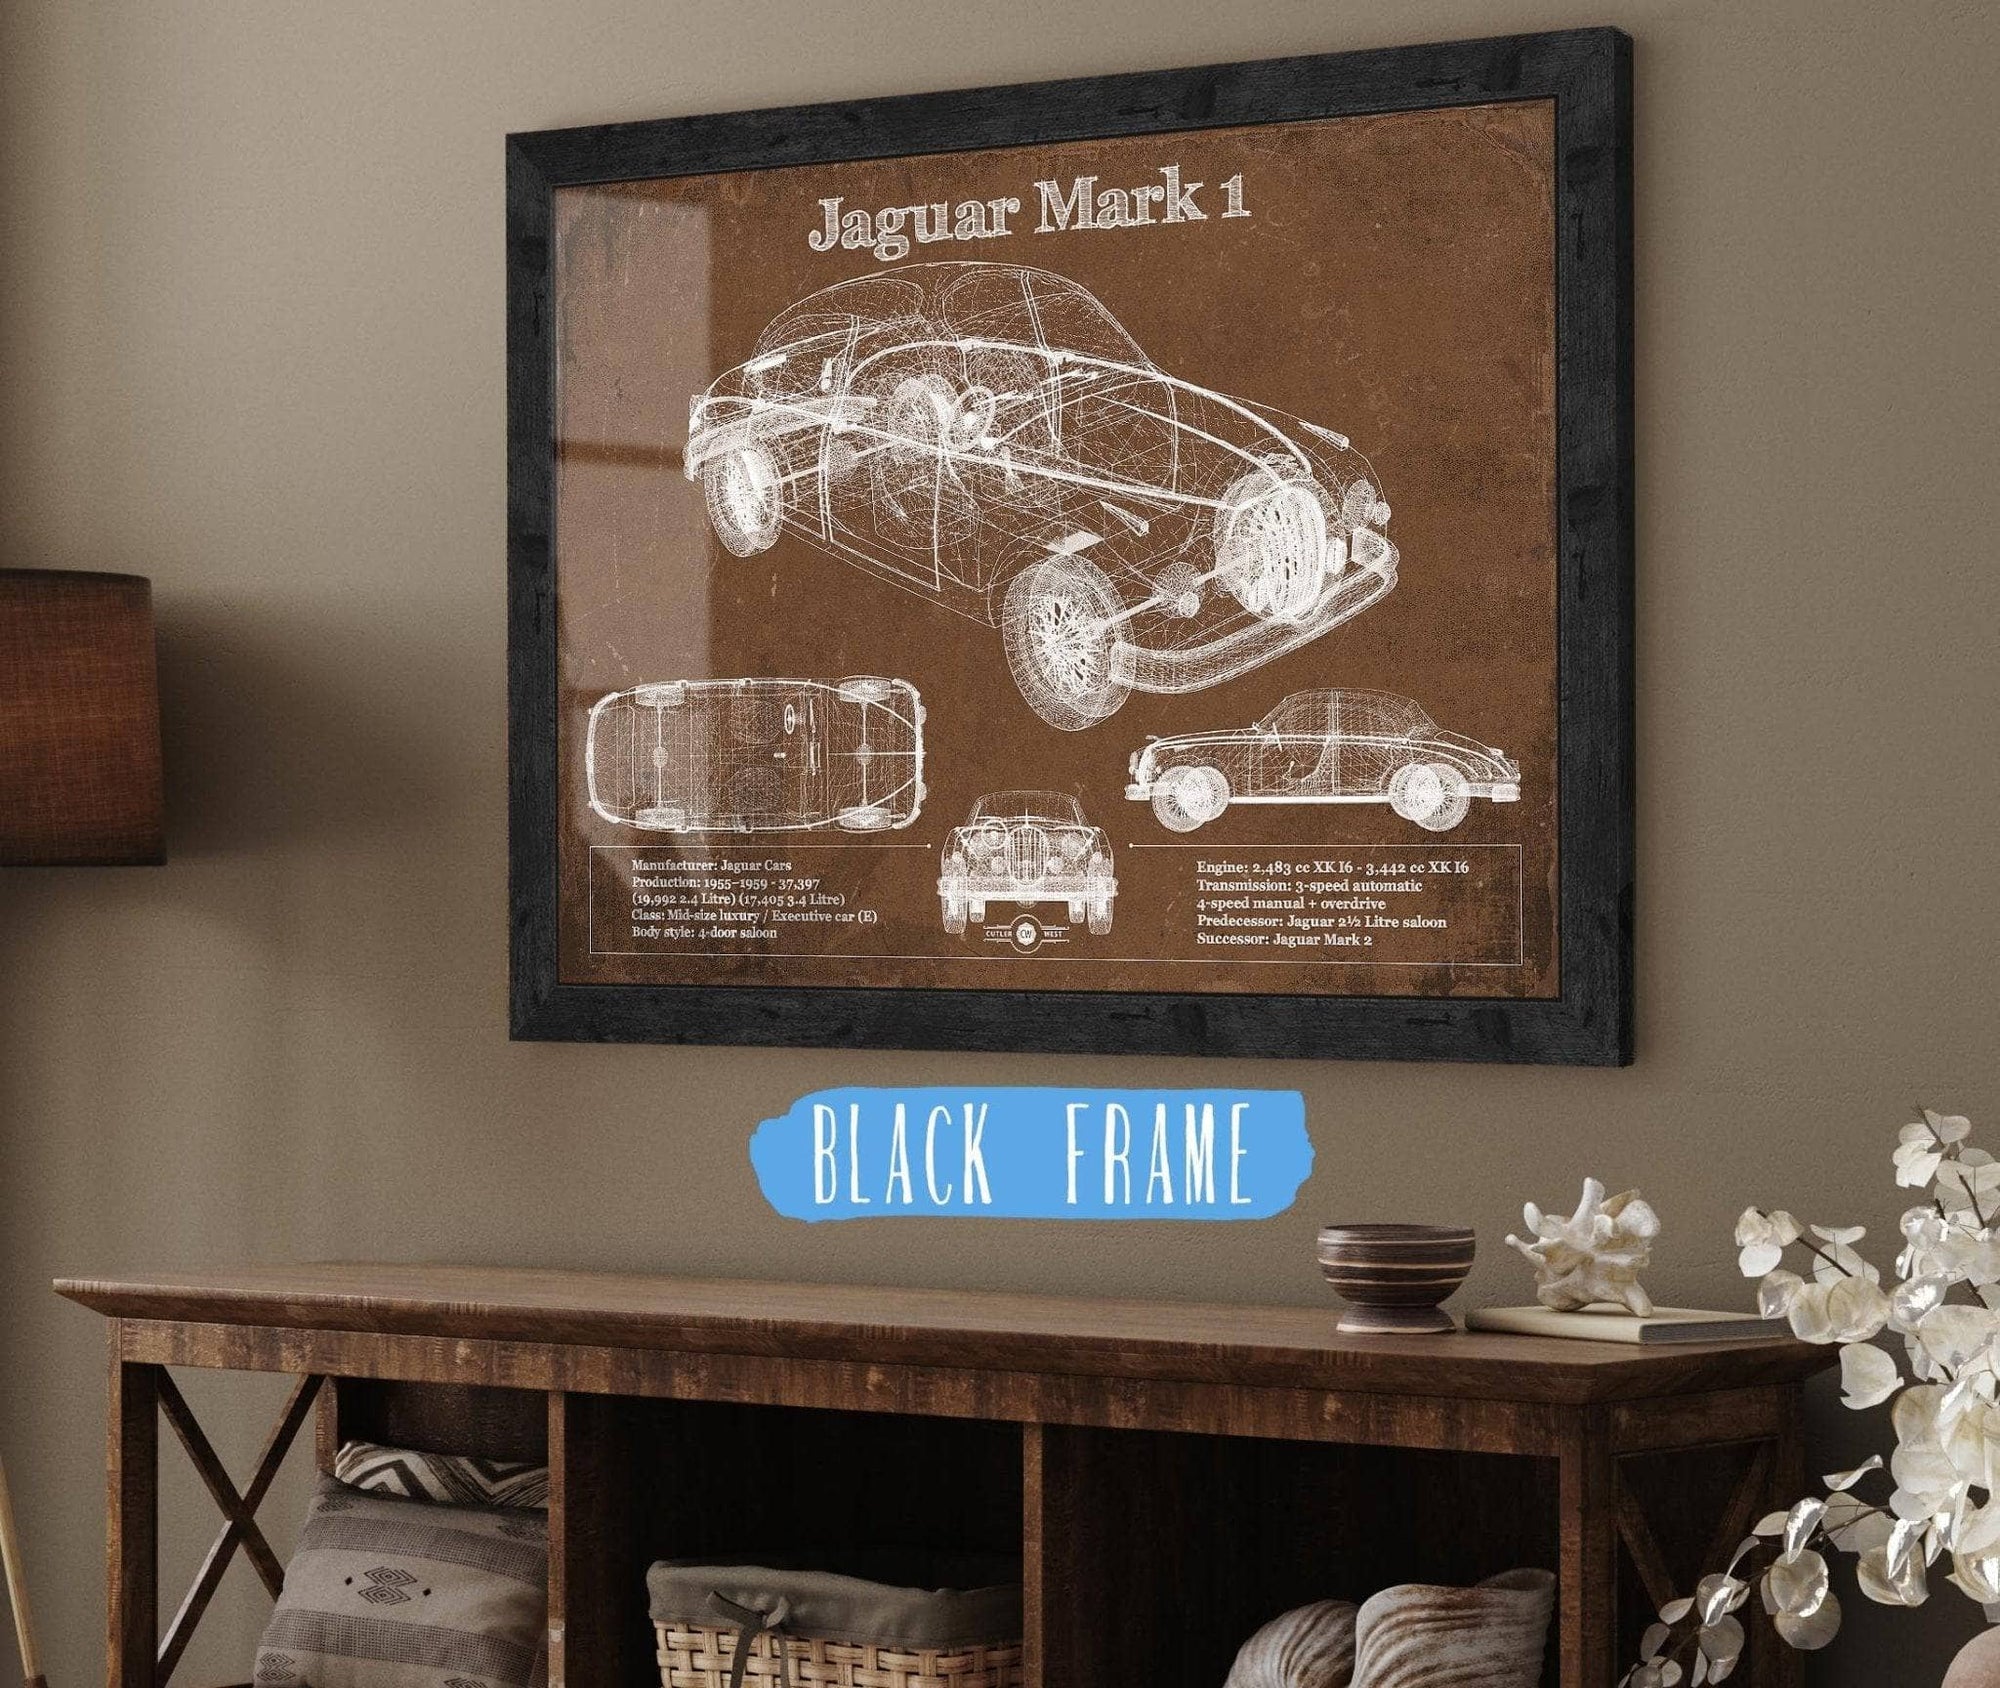 Cutler West Jaguar Collection 14" x 11" / Black Frame Jaguar Mark 1 Saloon Blueprint Vintage Auto Print 933311120_12927